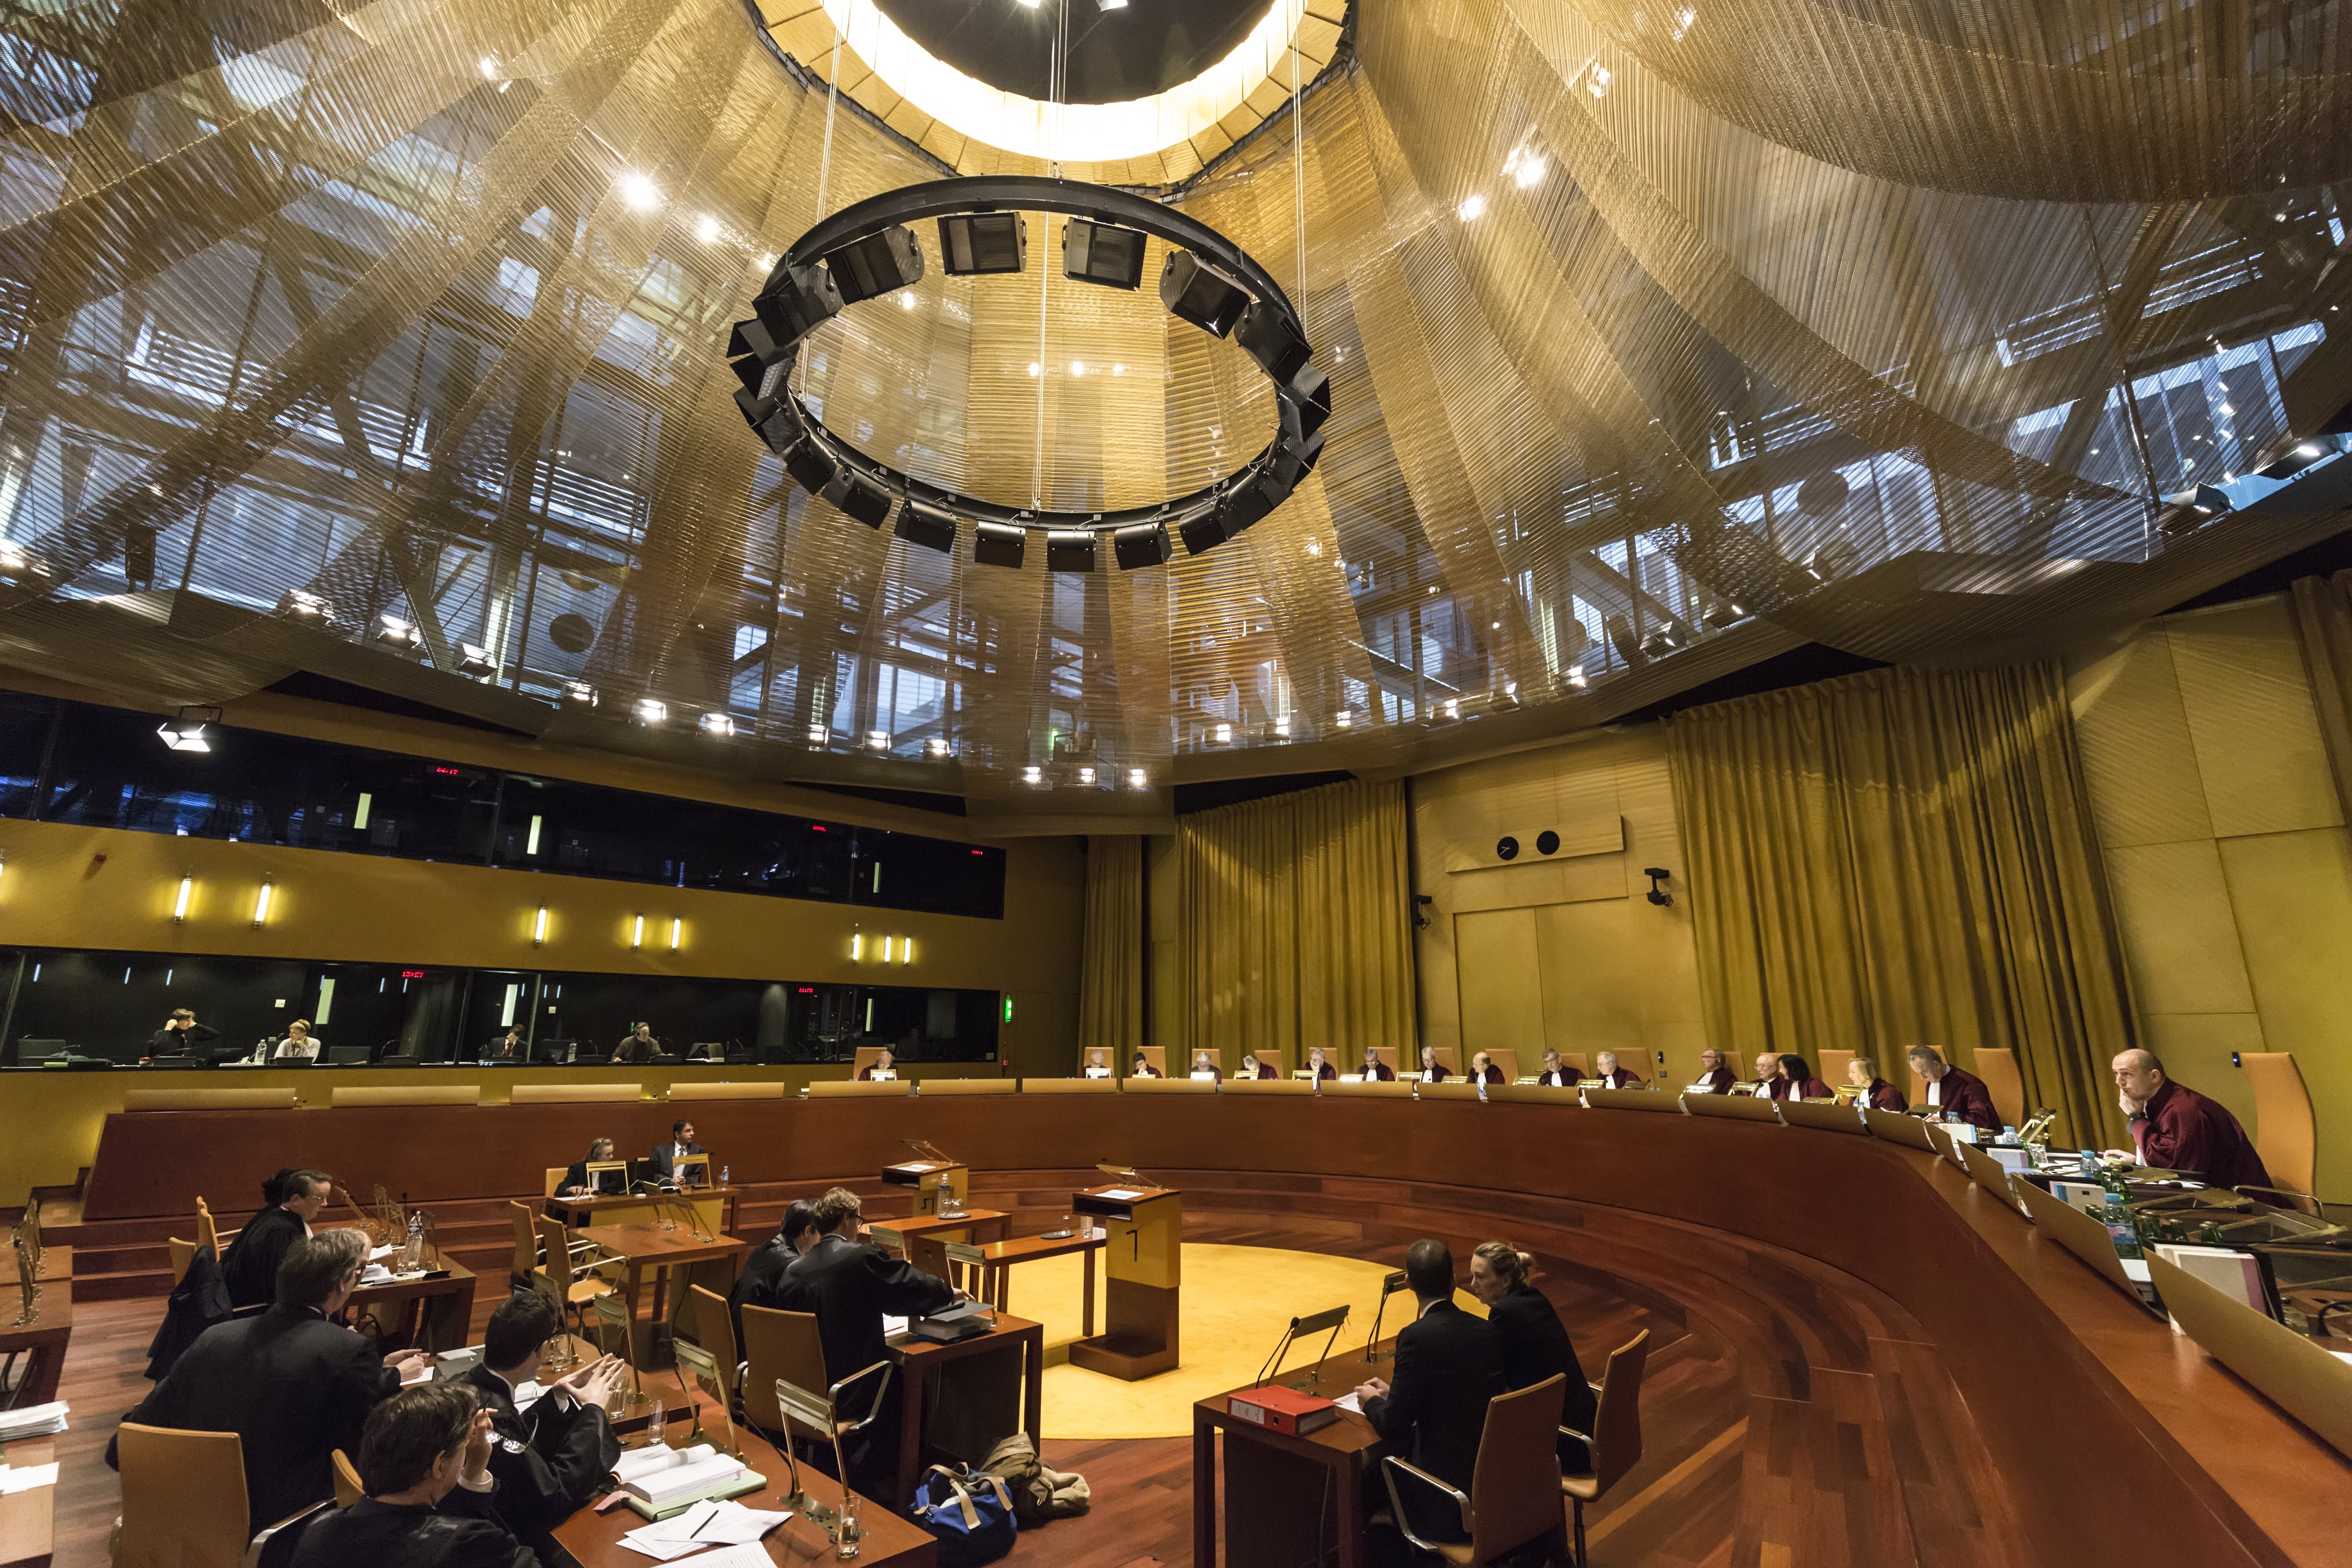 El Estado y el exilio confrontan posiciones sobre derechos fundamentales en el tribunal europeo